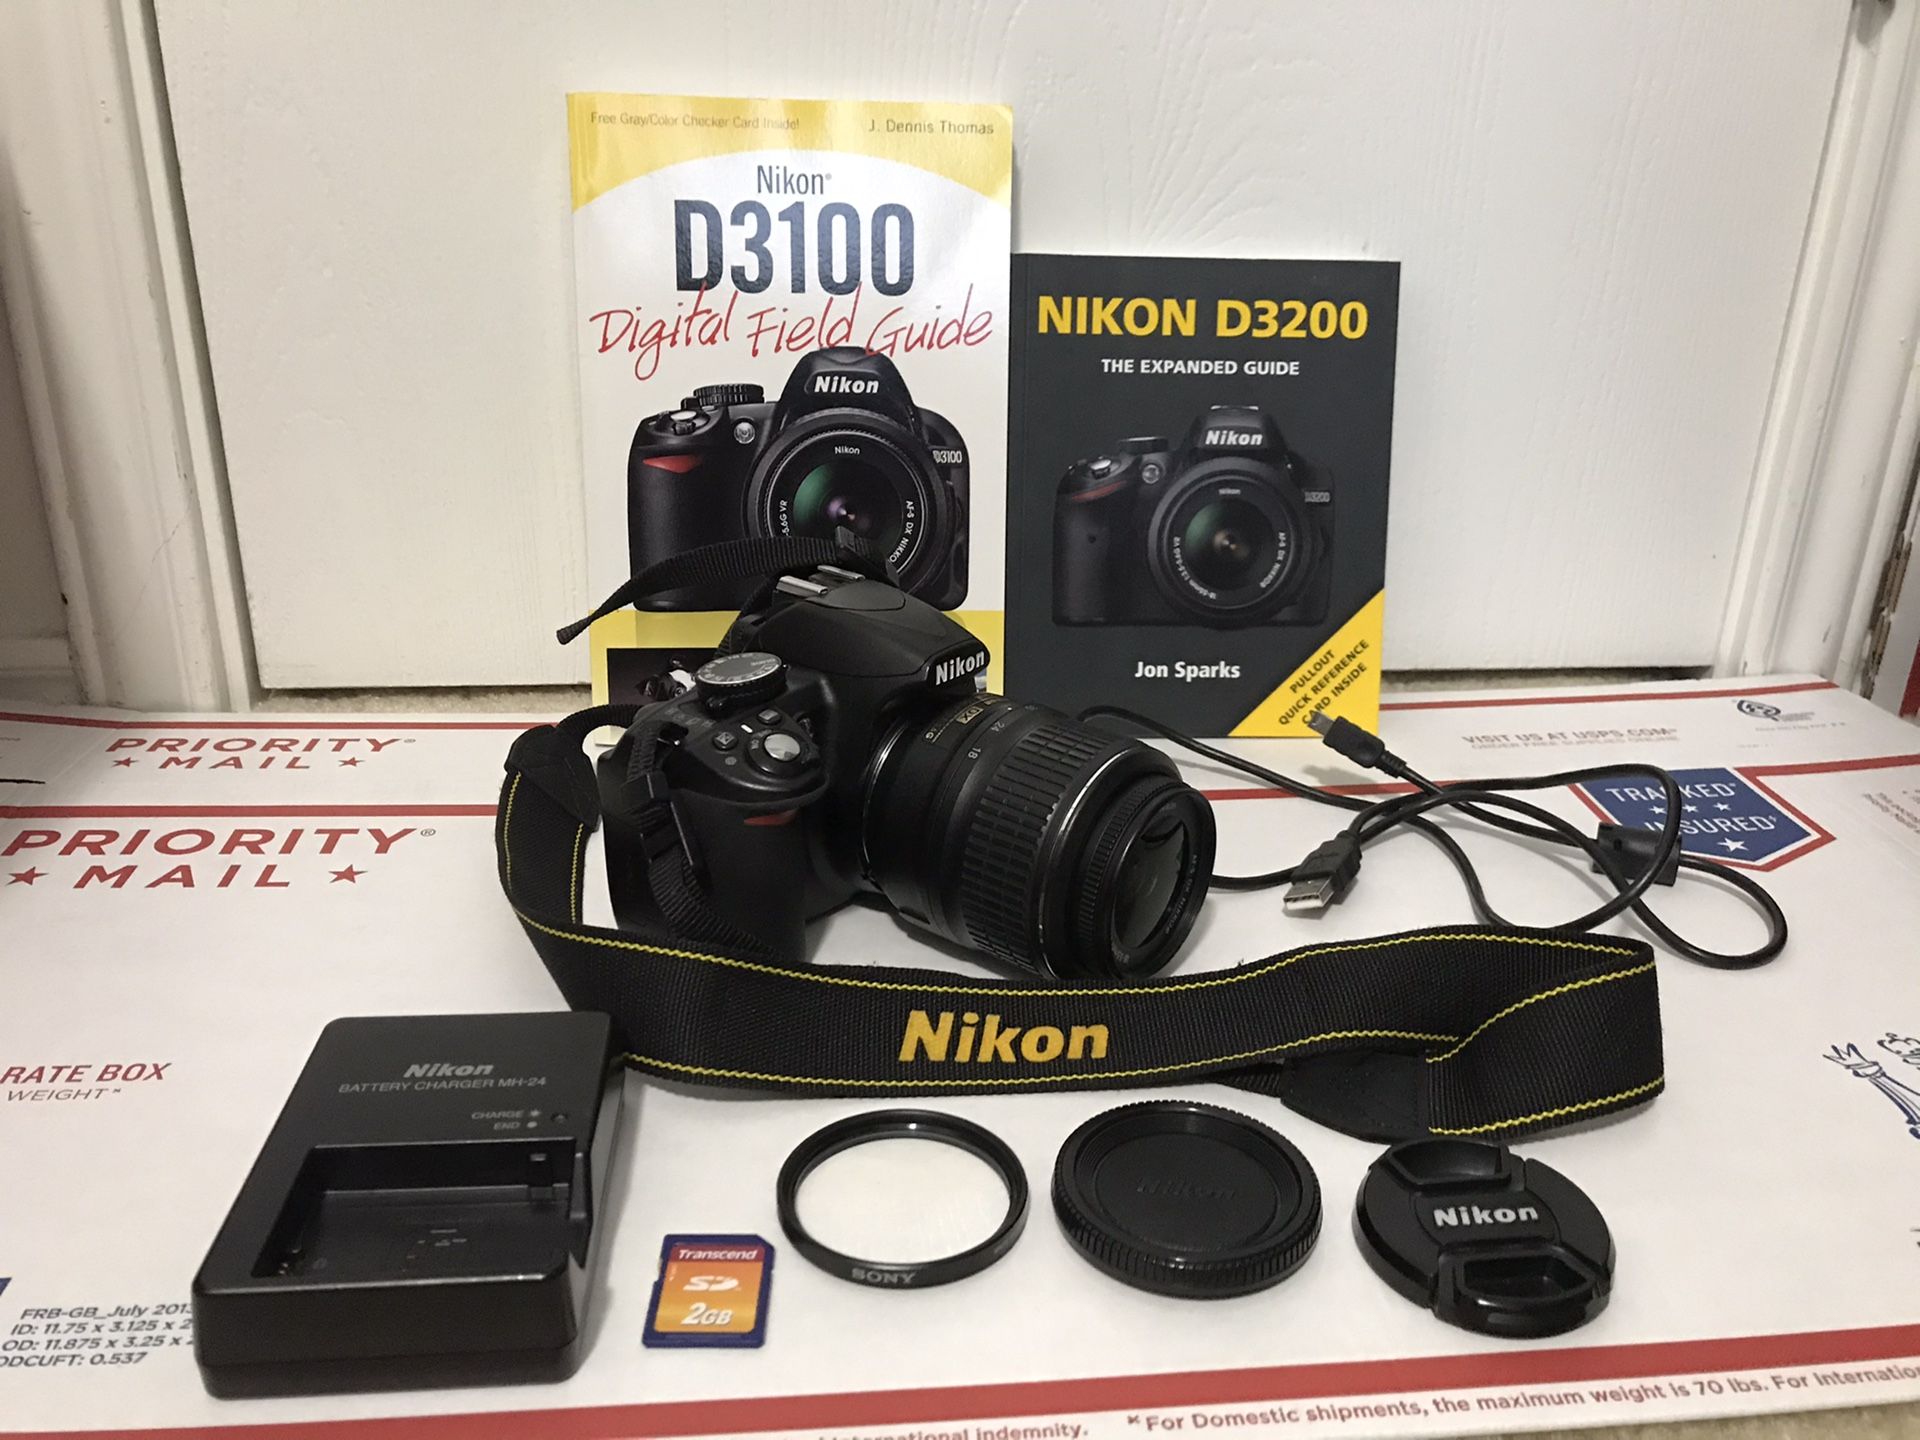 Nikon D3100 14.2MP Digital SLR Camera - Black (With AF-S DX VR 18-55mm Lens) 15,732 shutter count & 9 accessories